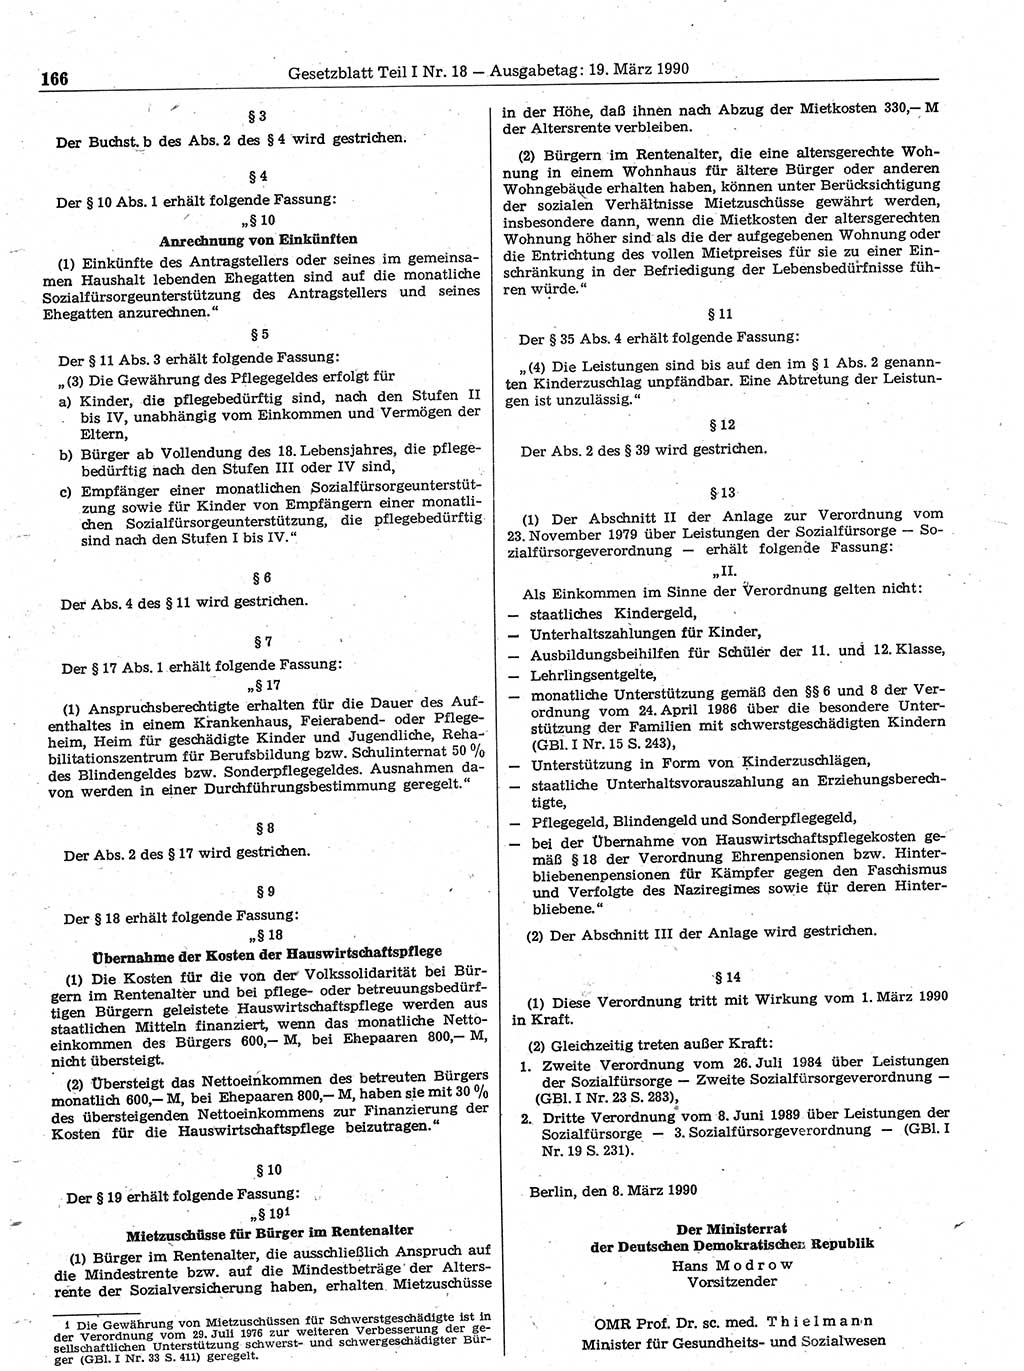 Gesetzblatt (GBl.) der Deutschen Demokratischen Republik (DDR) Teil Ⅰ 1990, Seite 166 (GBl. DDR Ⅰ 1990, S. 166)